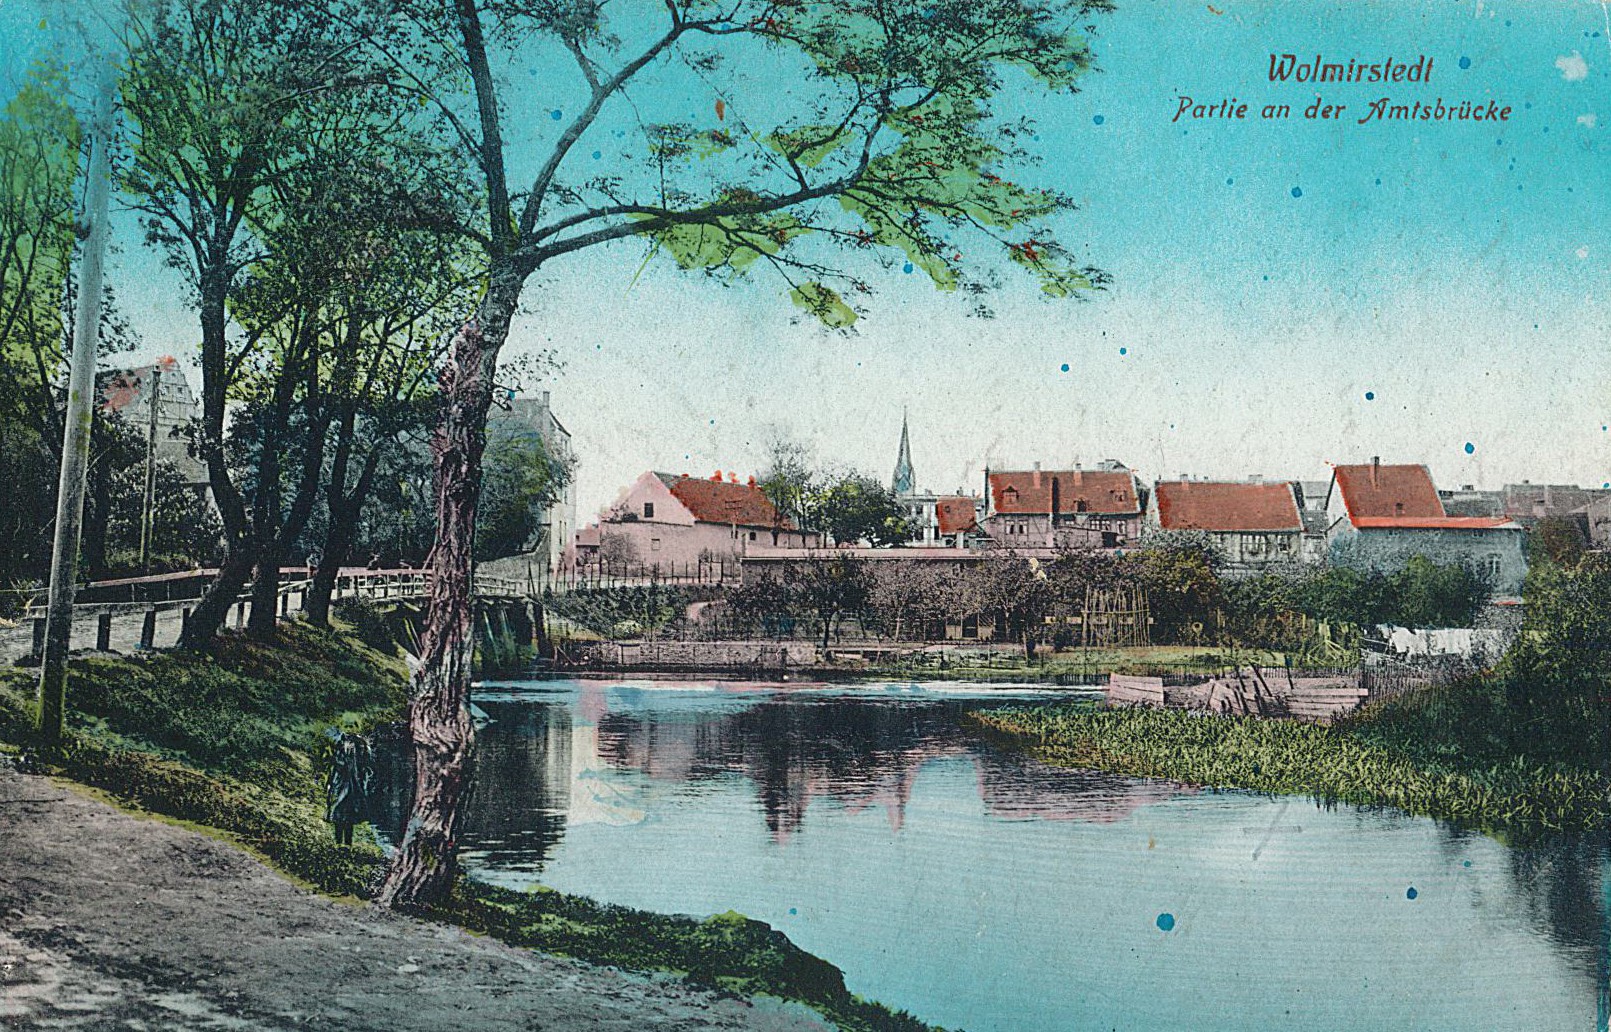 Postkarte "Wolmirstedt. Partie an der Amtsbrücke" (Museum Wolmirstedt RR-F)